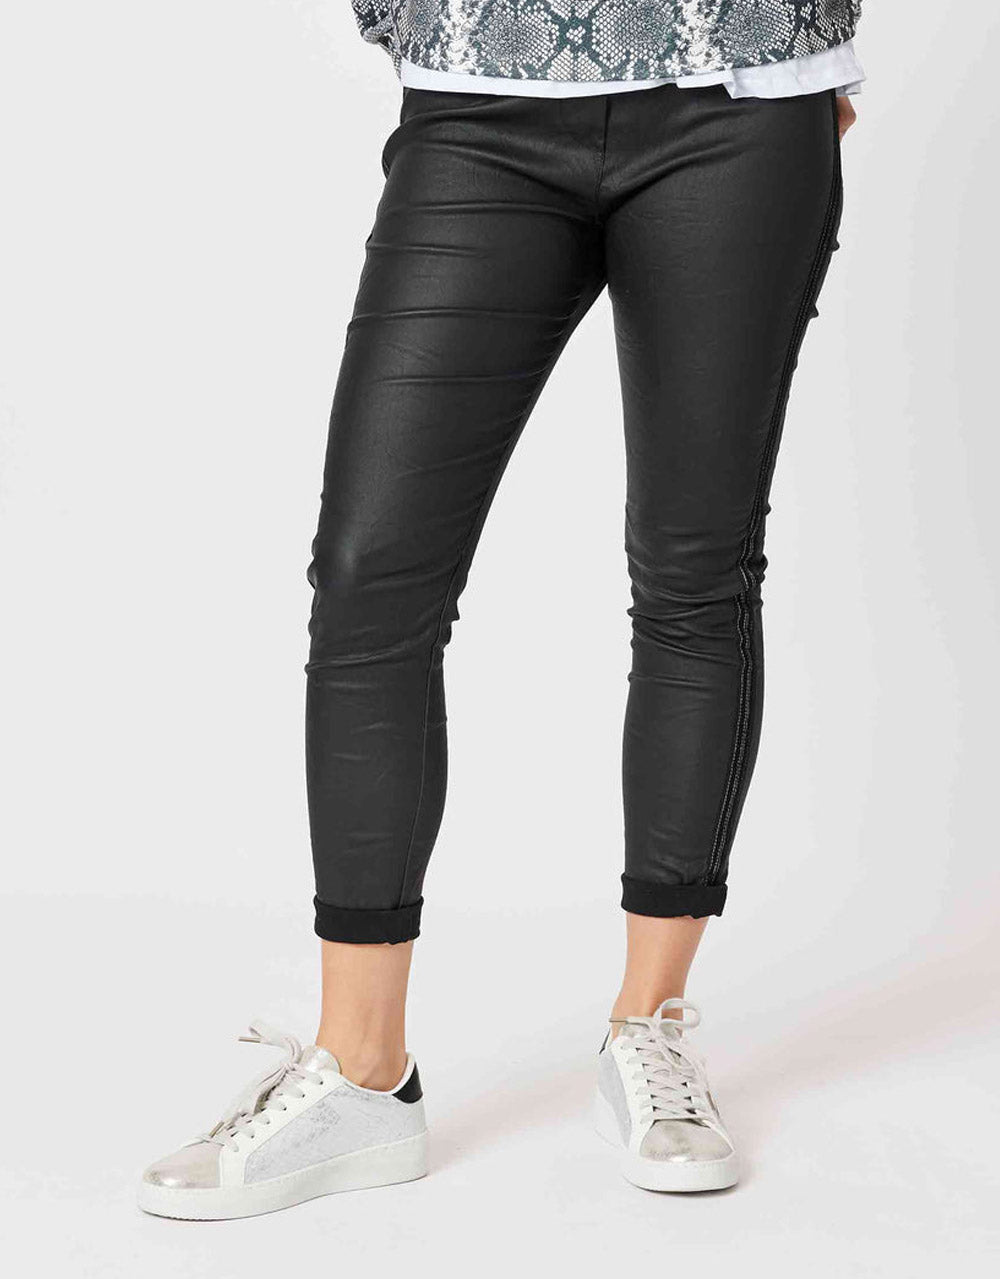 threadz-alex-coated-jogger-black-womens-plus-size-clothing